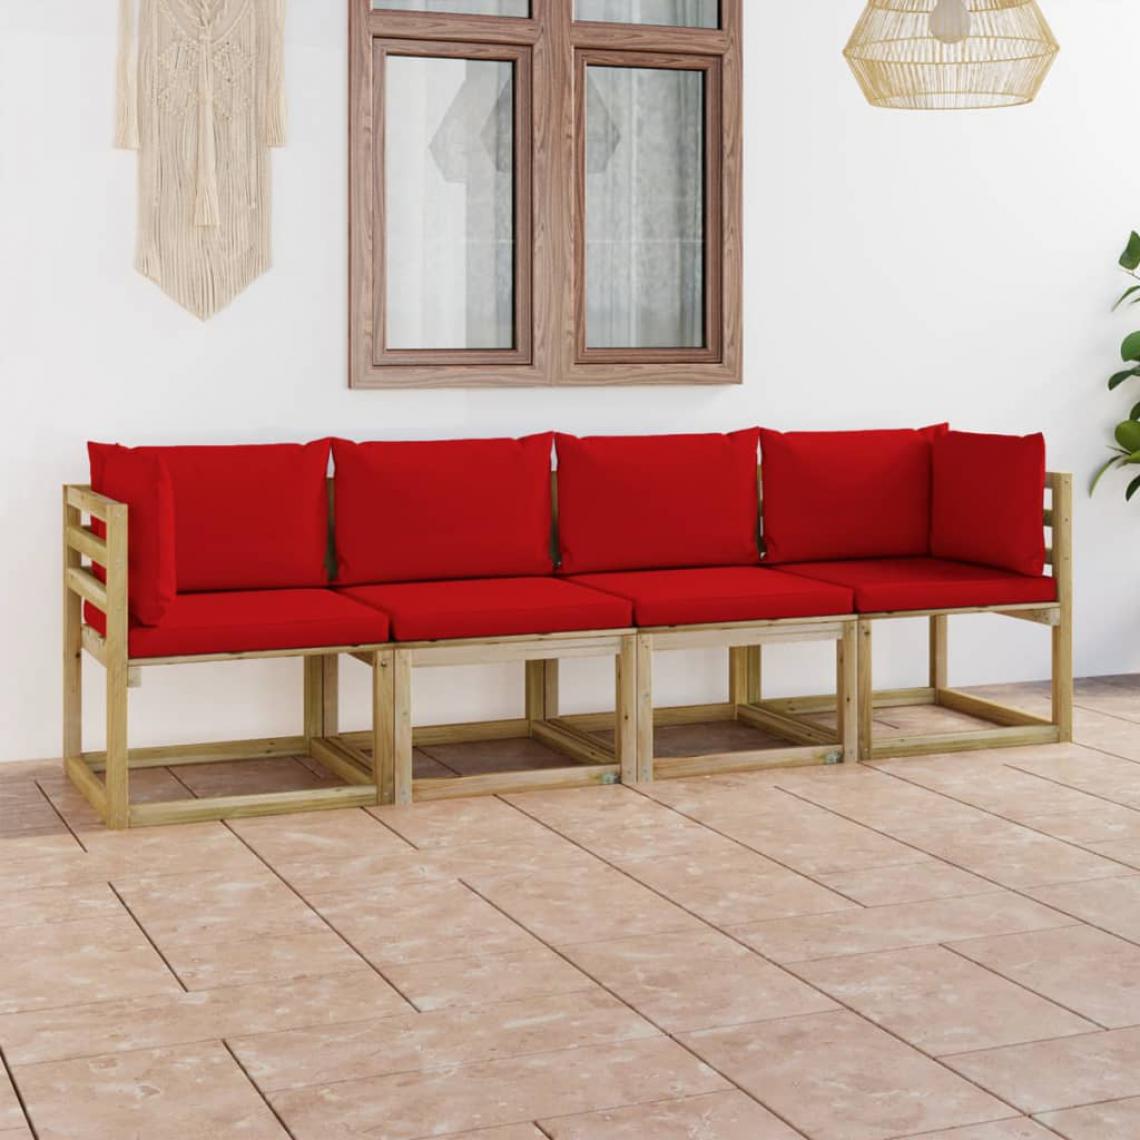 Chunhelife - Canapé de jardin 4 places avec coussins rouge - Ensembles canapés et fauteuils